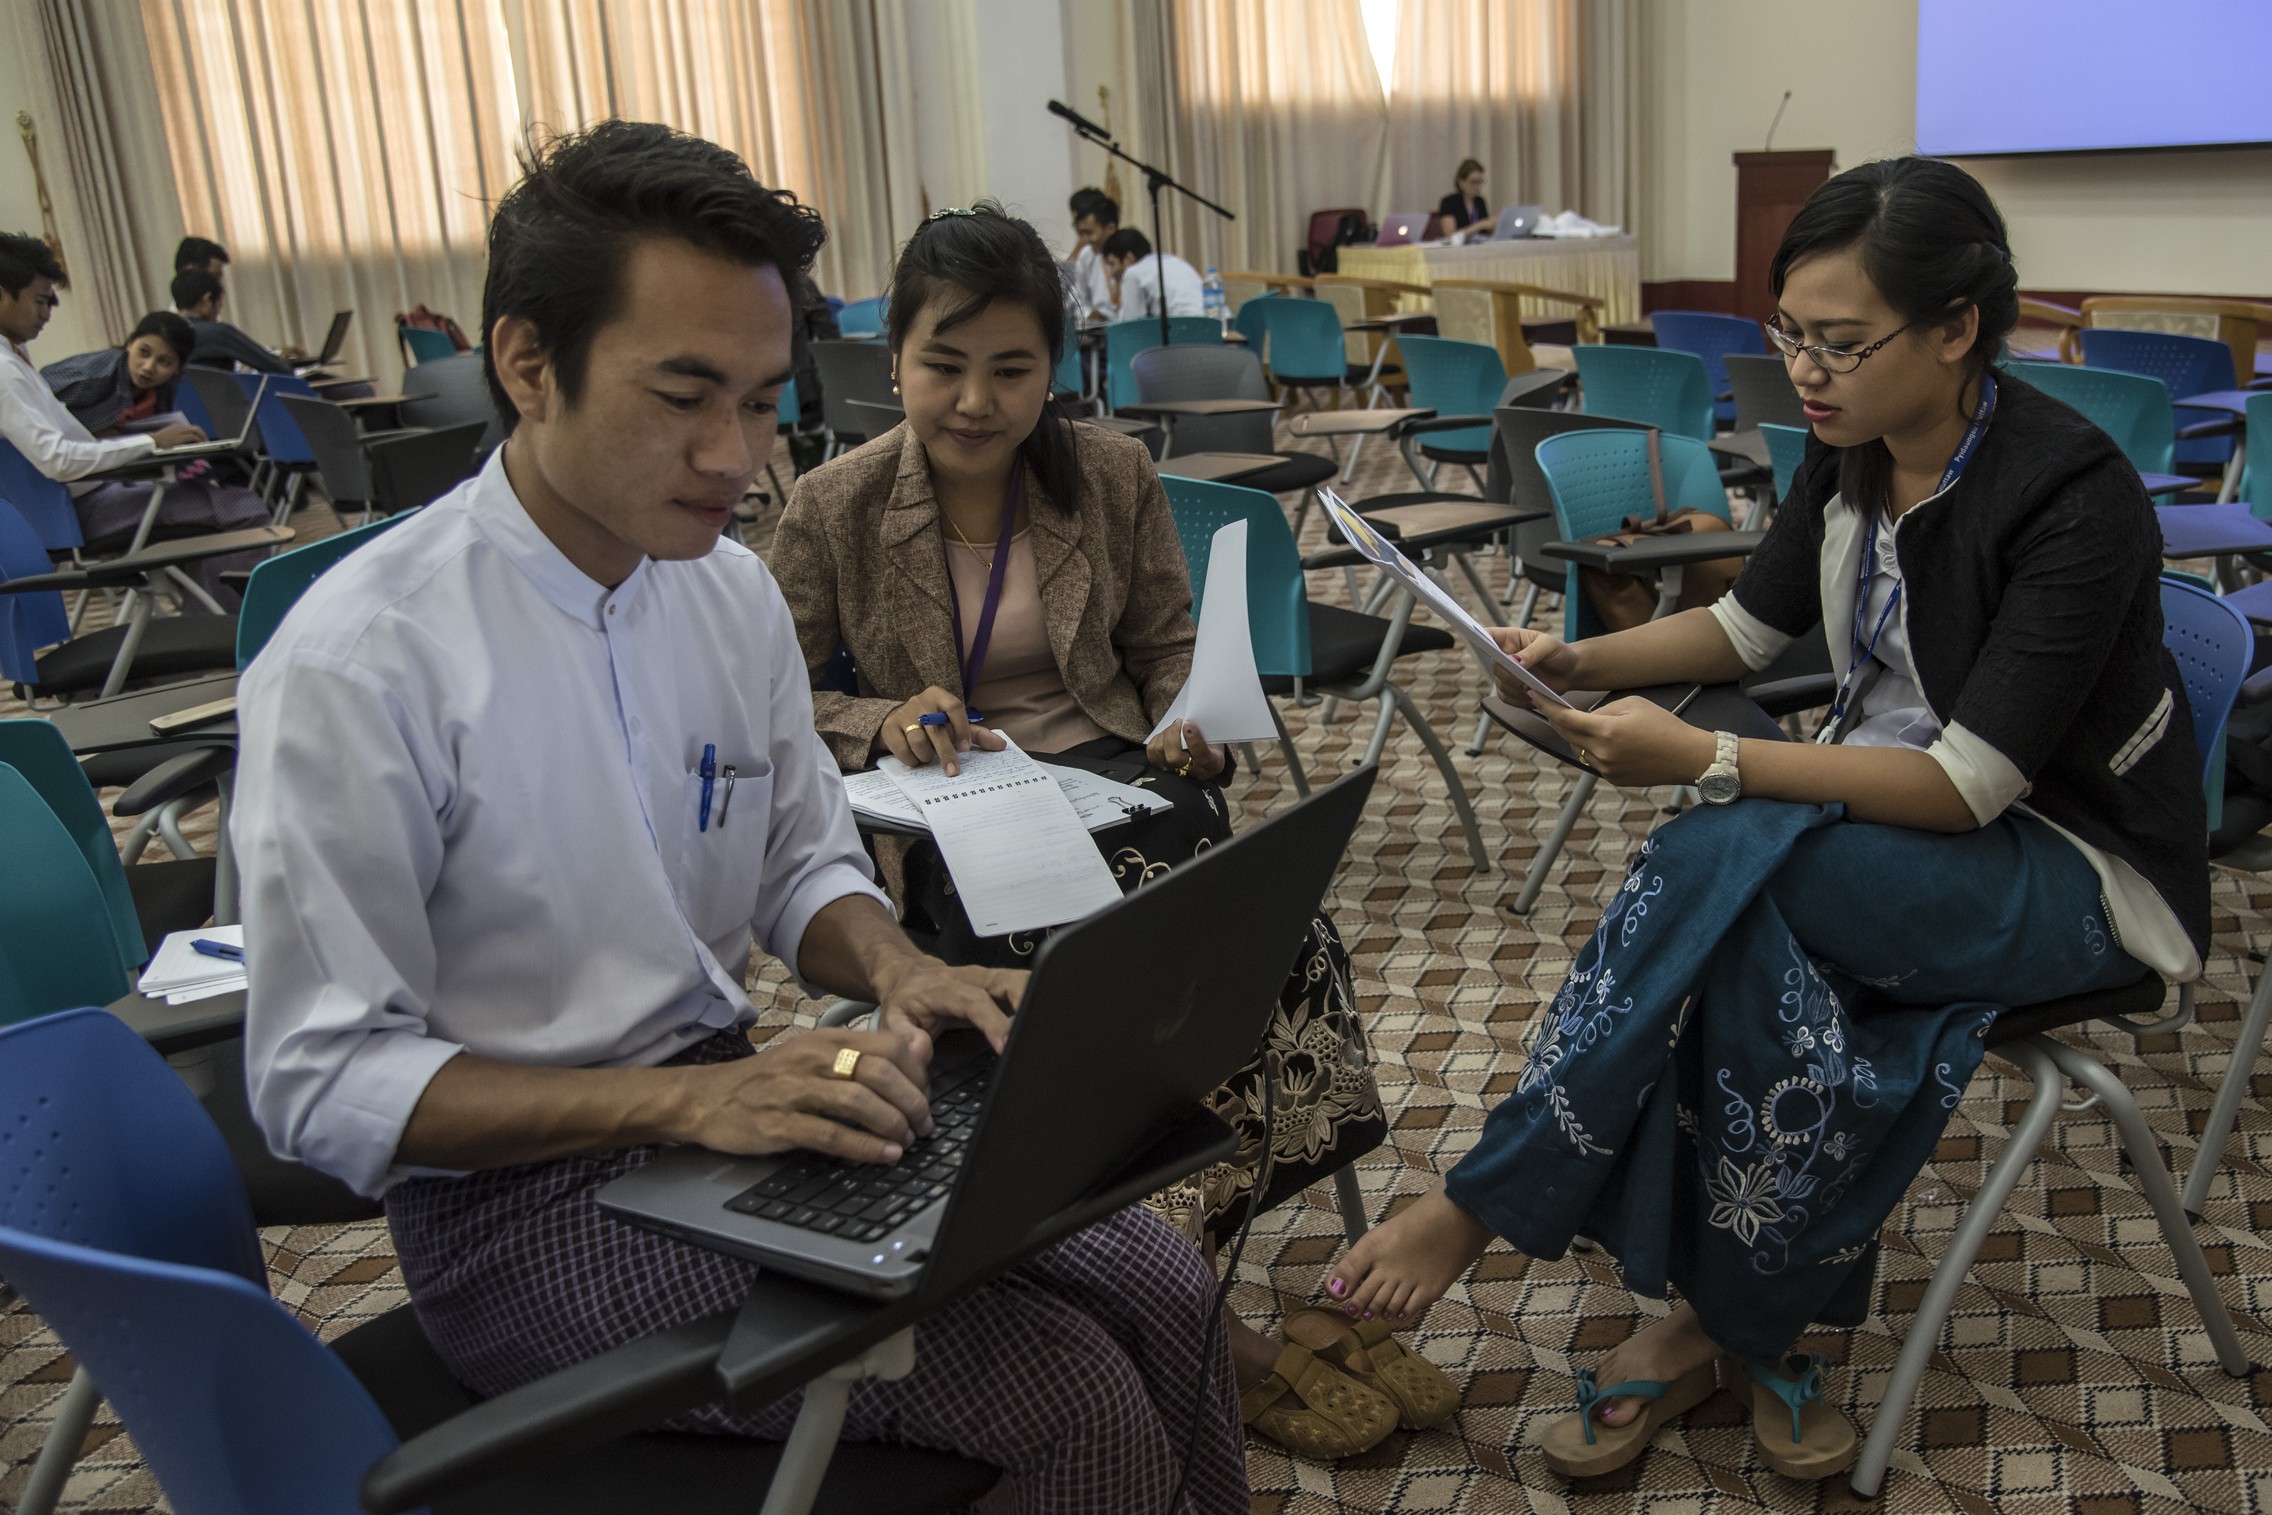 Atelier de formation de journalistes parlementaires au Myanmar organisé par la Fondation Hirondelle, en octobre 2016. © Fondation Hirondelle / Thierry Falise